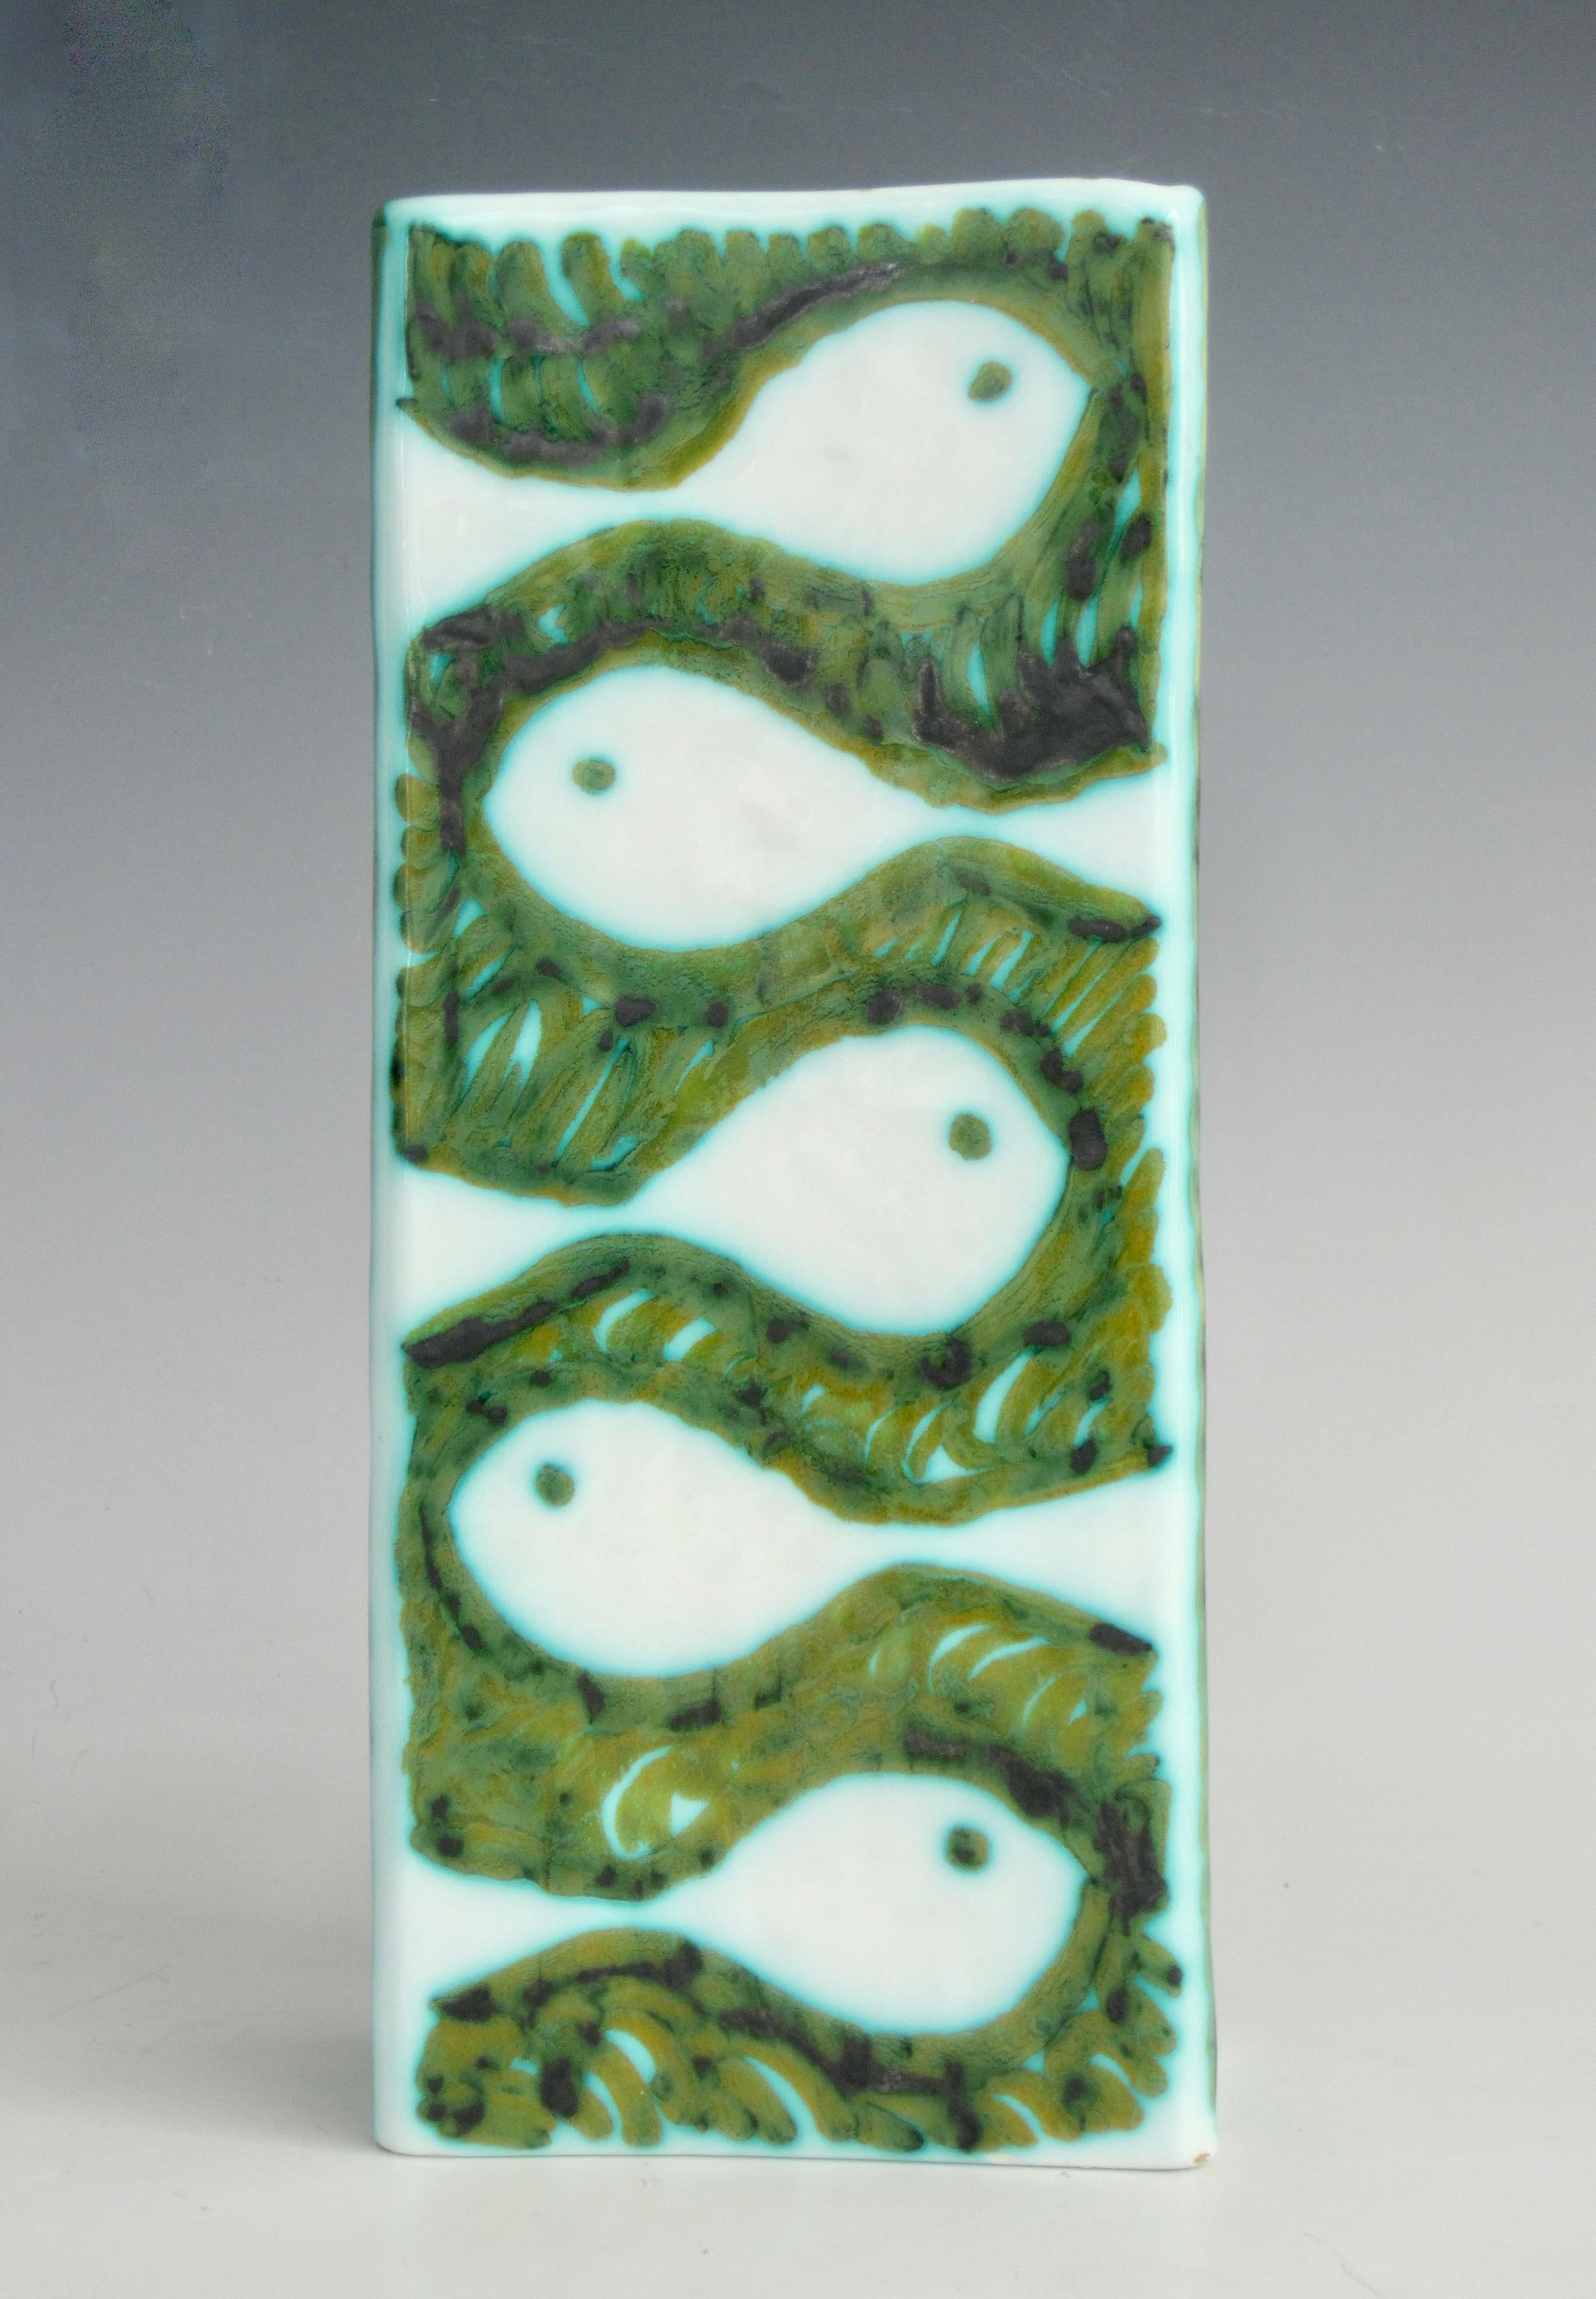 Doppelseitige rechteckige Keramikvase von Alessio Tasca für Raymor. Pinselstriche in Grün, Schwarz, Ocker und Türkis bilden die Formen von Fischen
auf der einen Seite, Tauben auf der anderen Seite und Linien, wo die vier Seiten